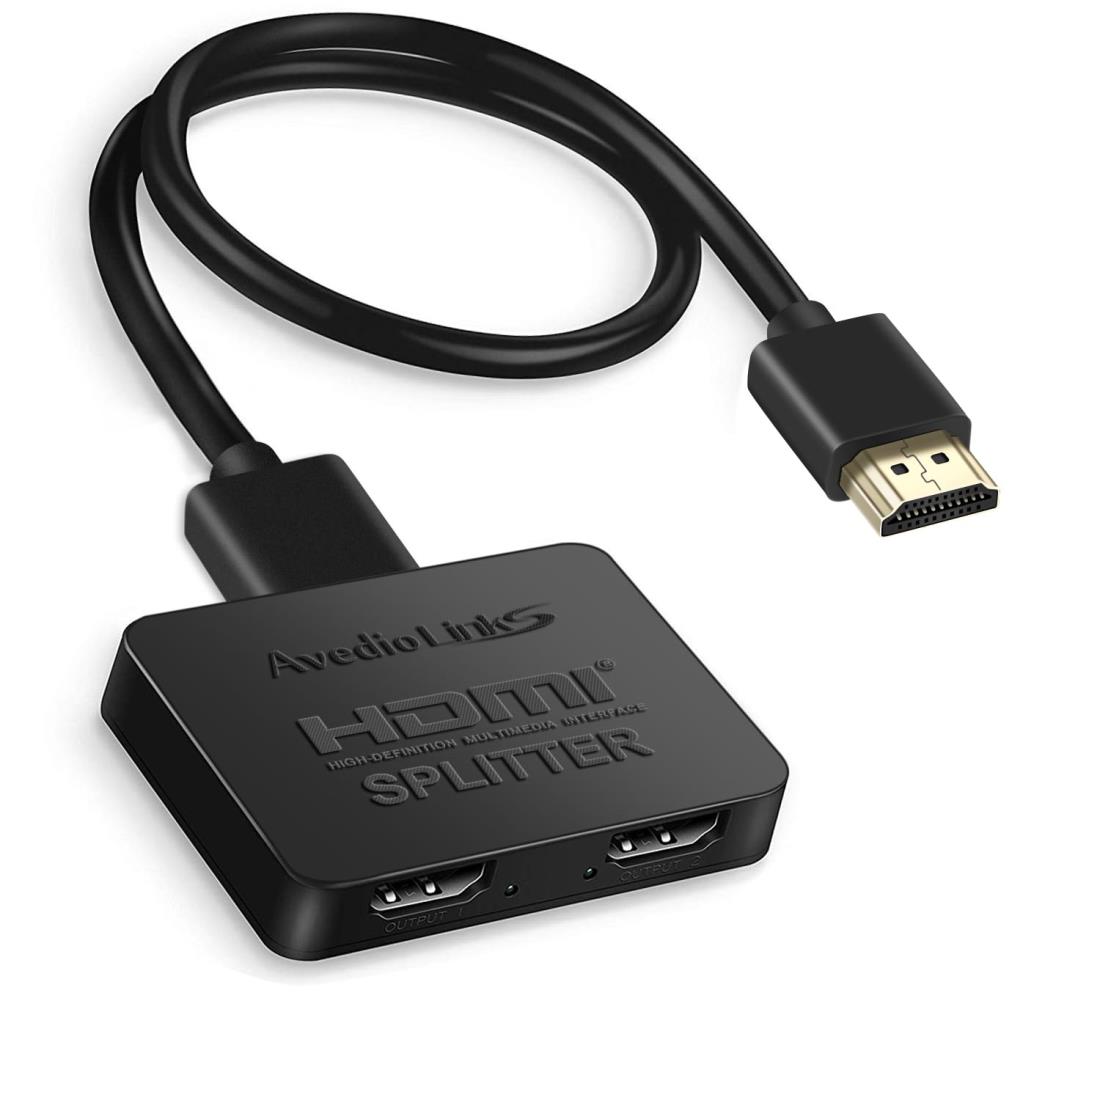 avedio links HDMI分配器 4Kx2K HDMIスプリッター 1入力2出力 3D、フルHD、 1080P、HDCP1.4対応 HDMI 二股 お好みの2台のディスプレイに同時出力可能 USB電源ケーブル&HDMIケーブル付属 XBOX/PS5/HDTV/D V Dプレーヤーに適用【軽量設計、信号ロスなし】